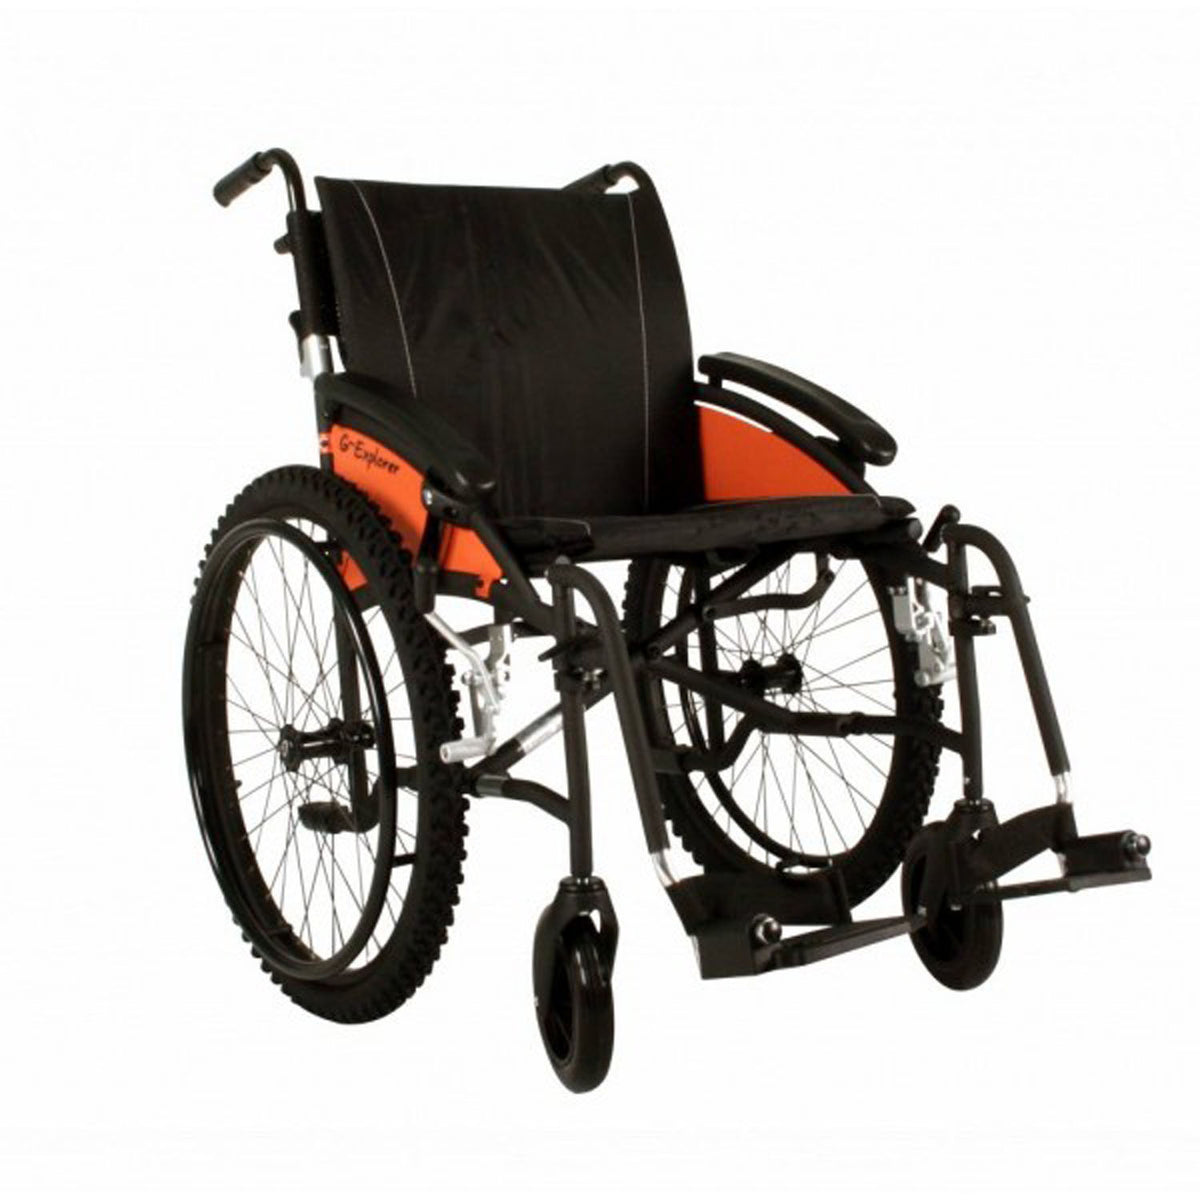 18" Van Os G-EXPLORER Wheelchair All Terrain Self Propelled Lightweight